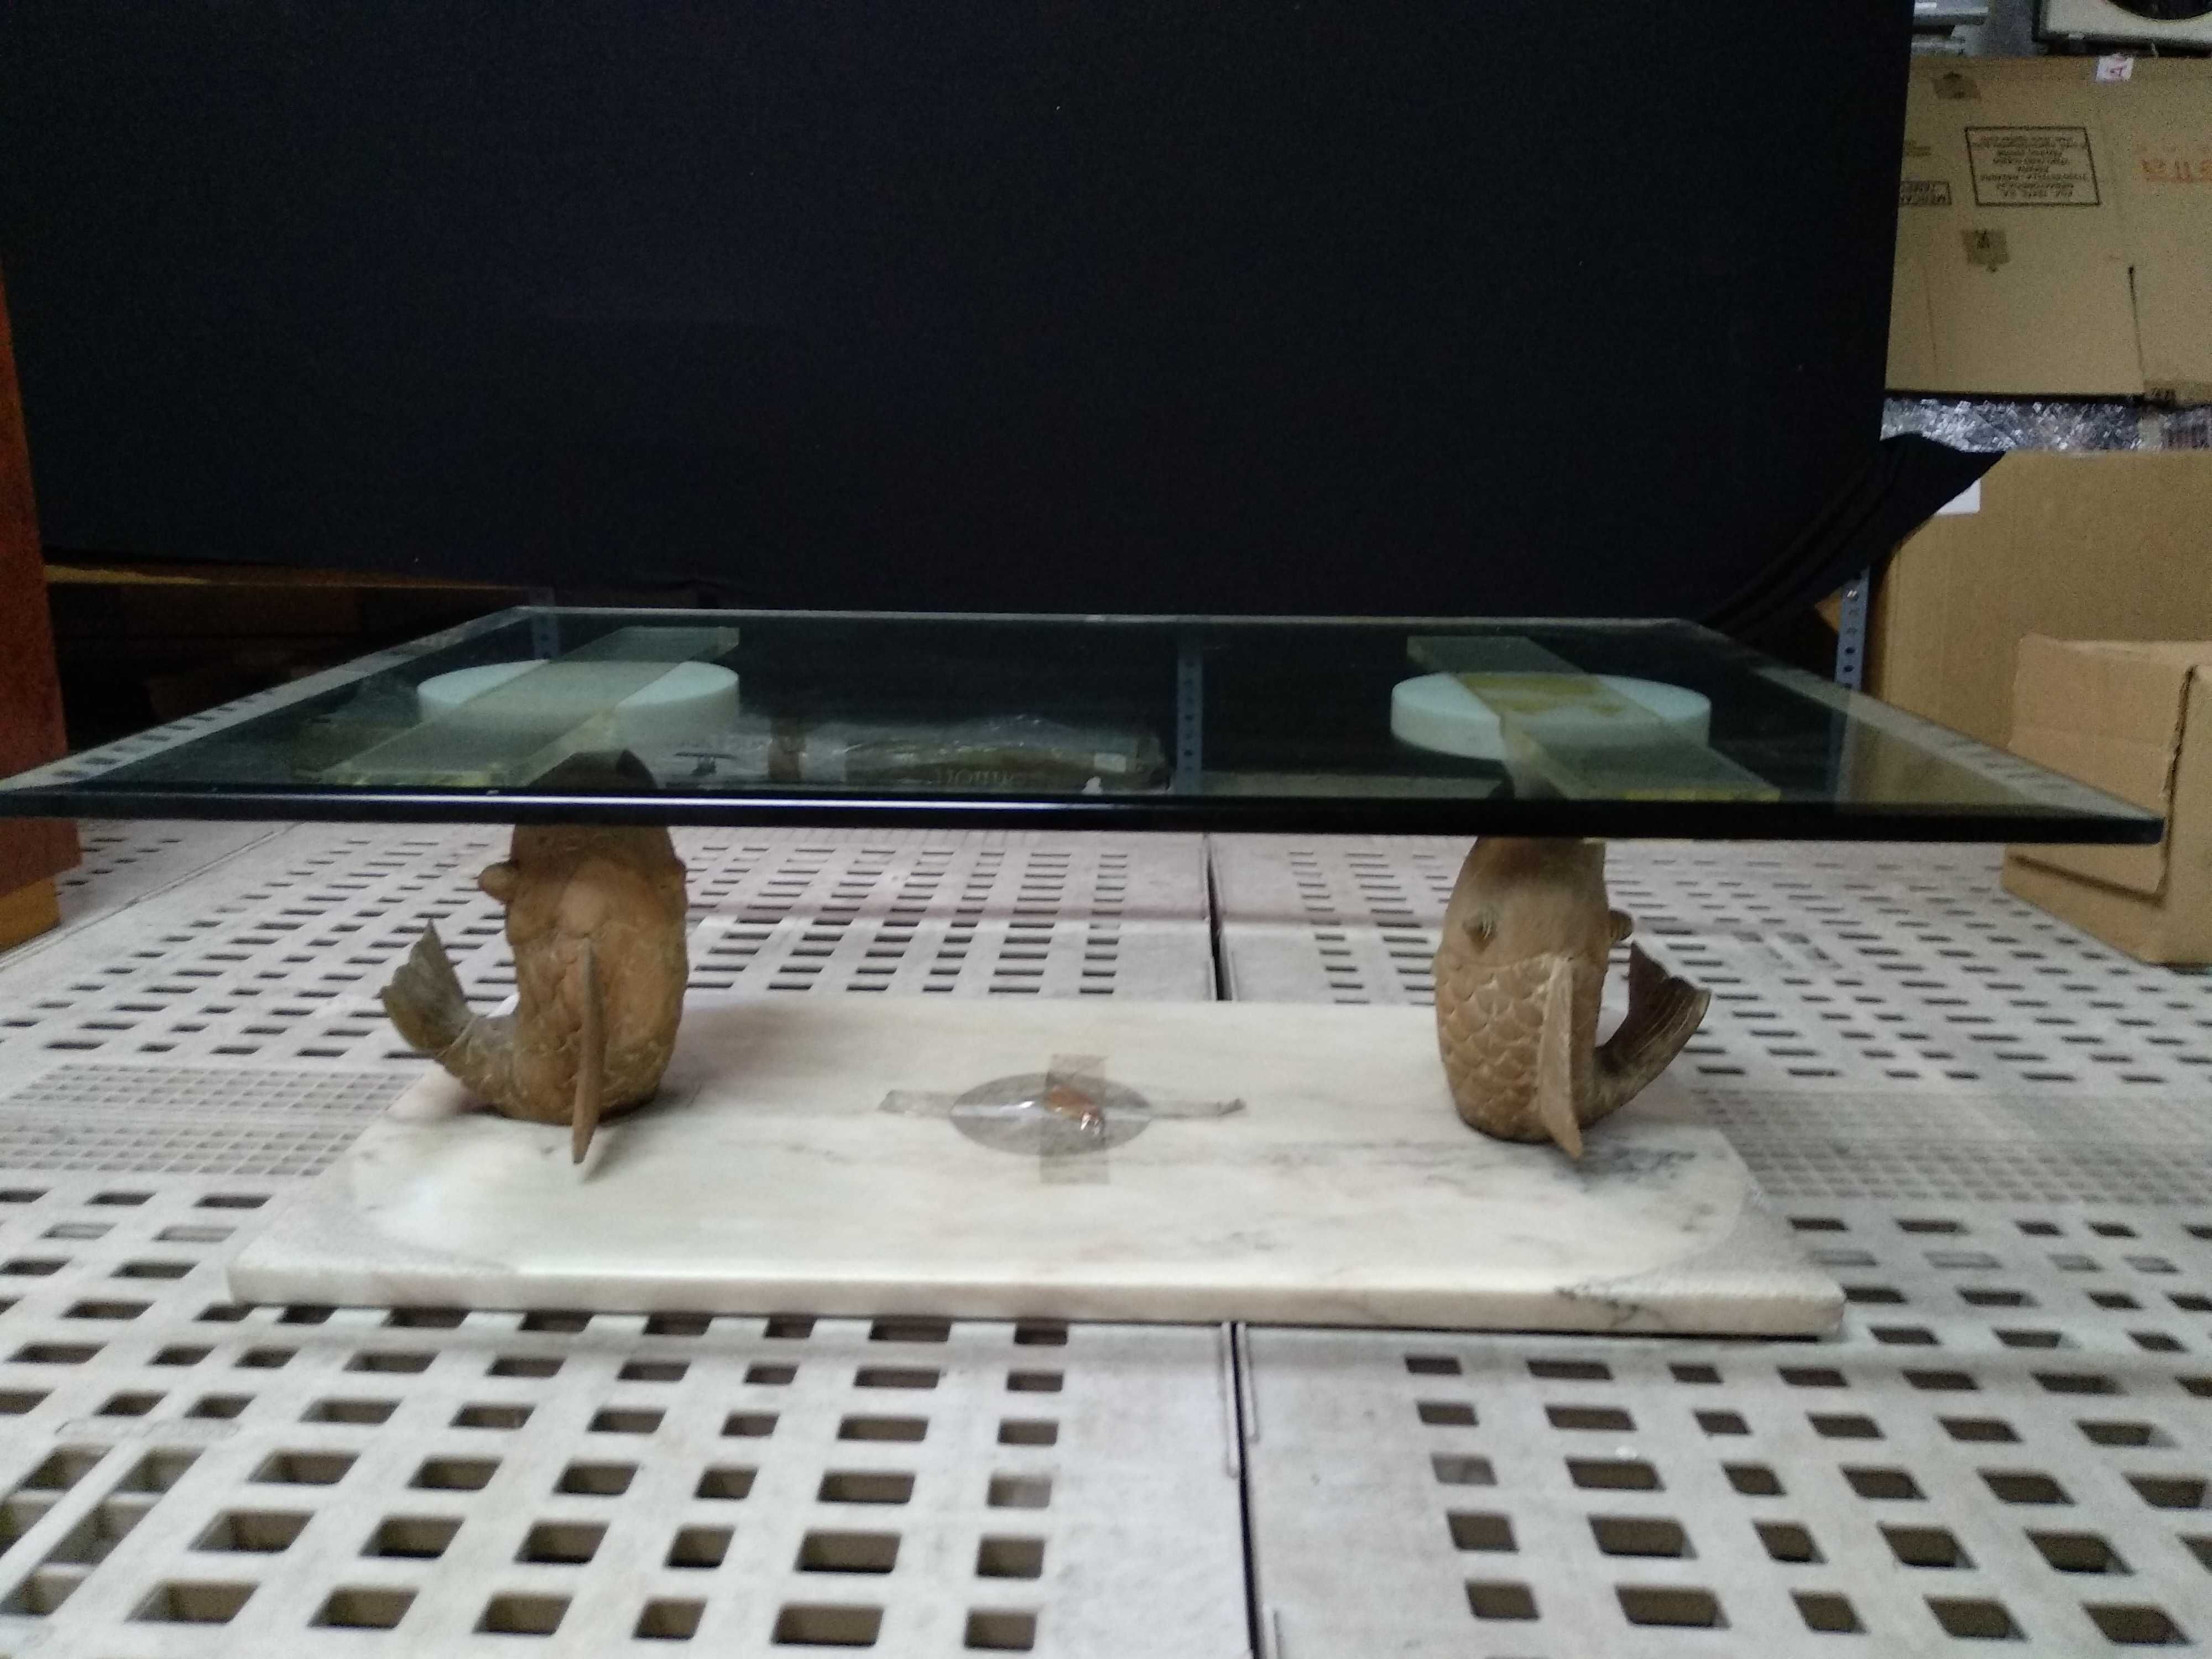 Mesa de Centro de Sala de Estar com 2 Peixes - Mesinha de apoio